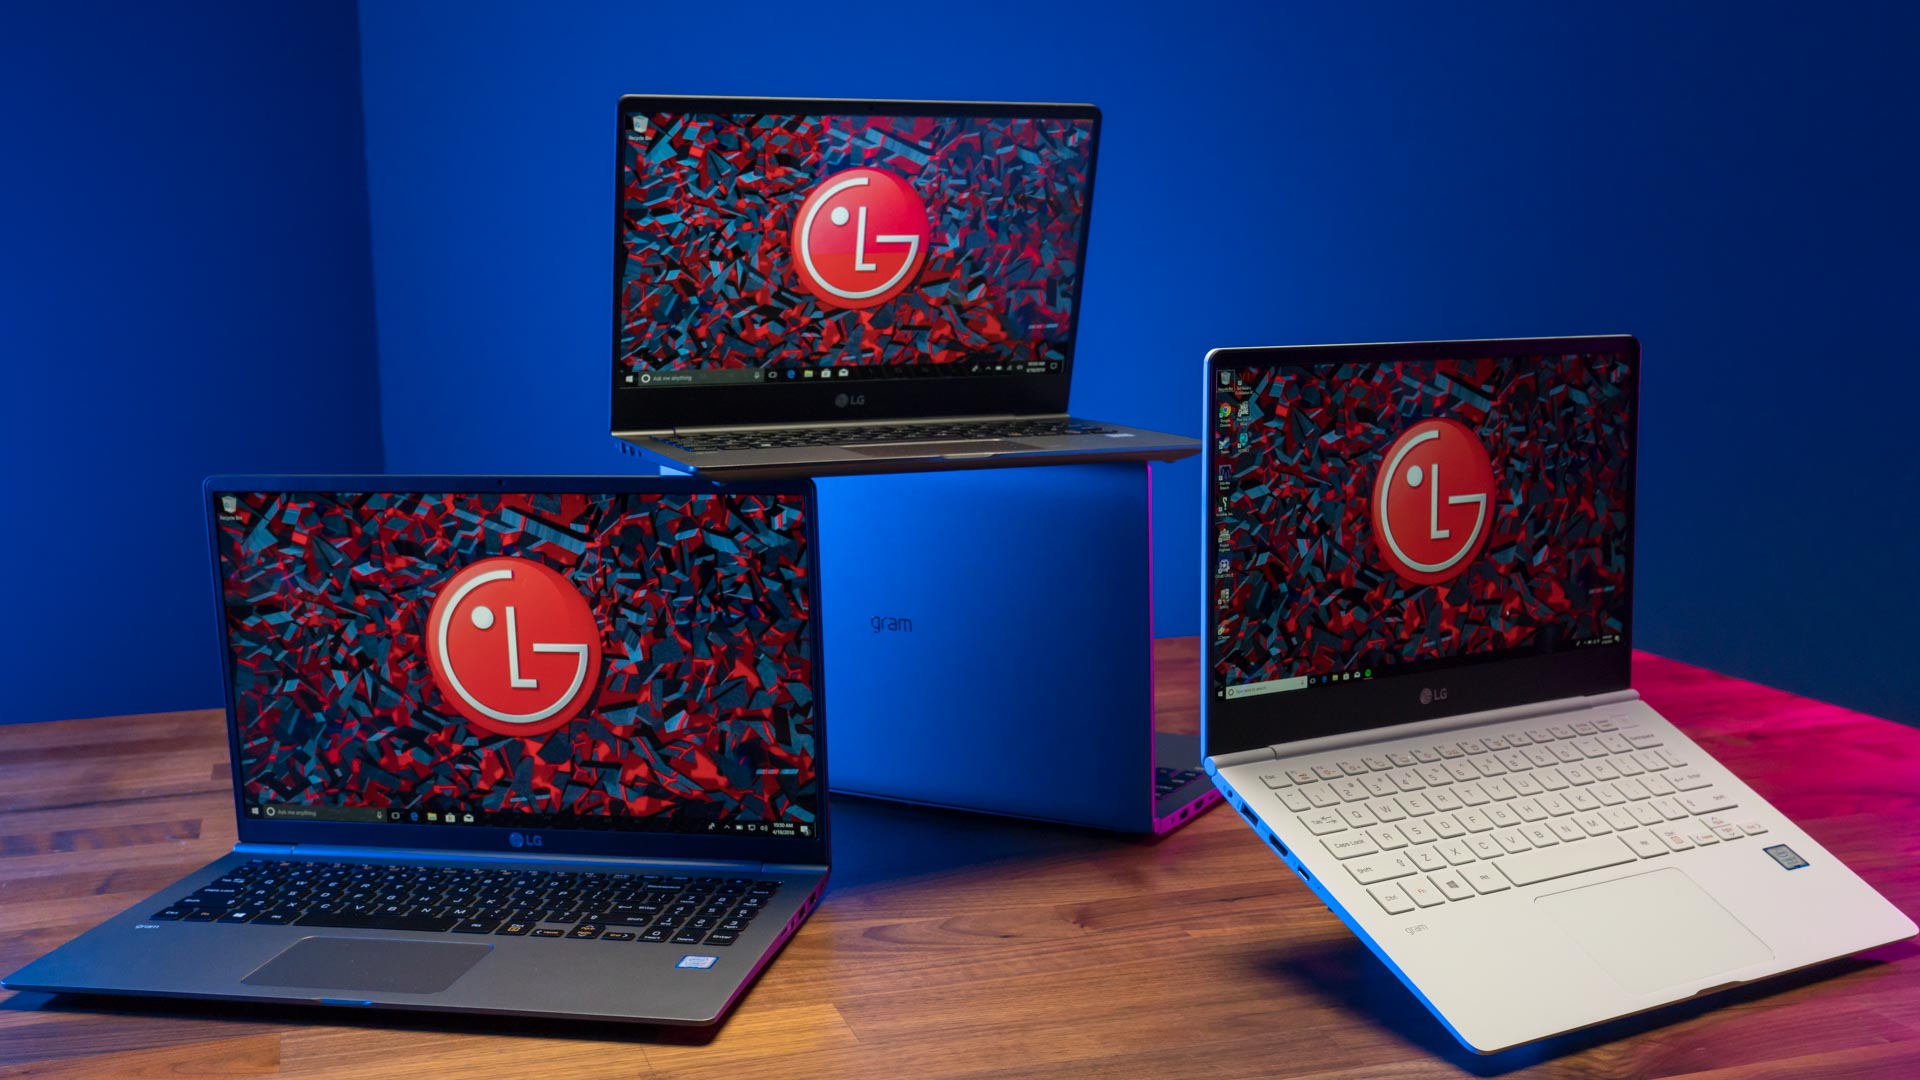 LG_gram_laptops_2018-1